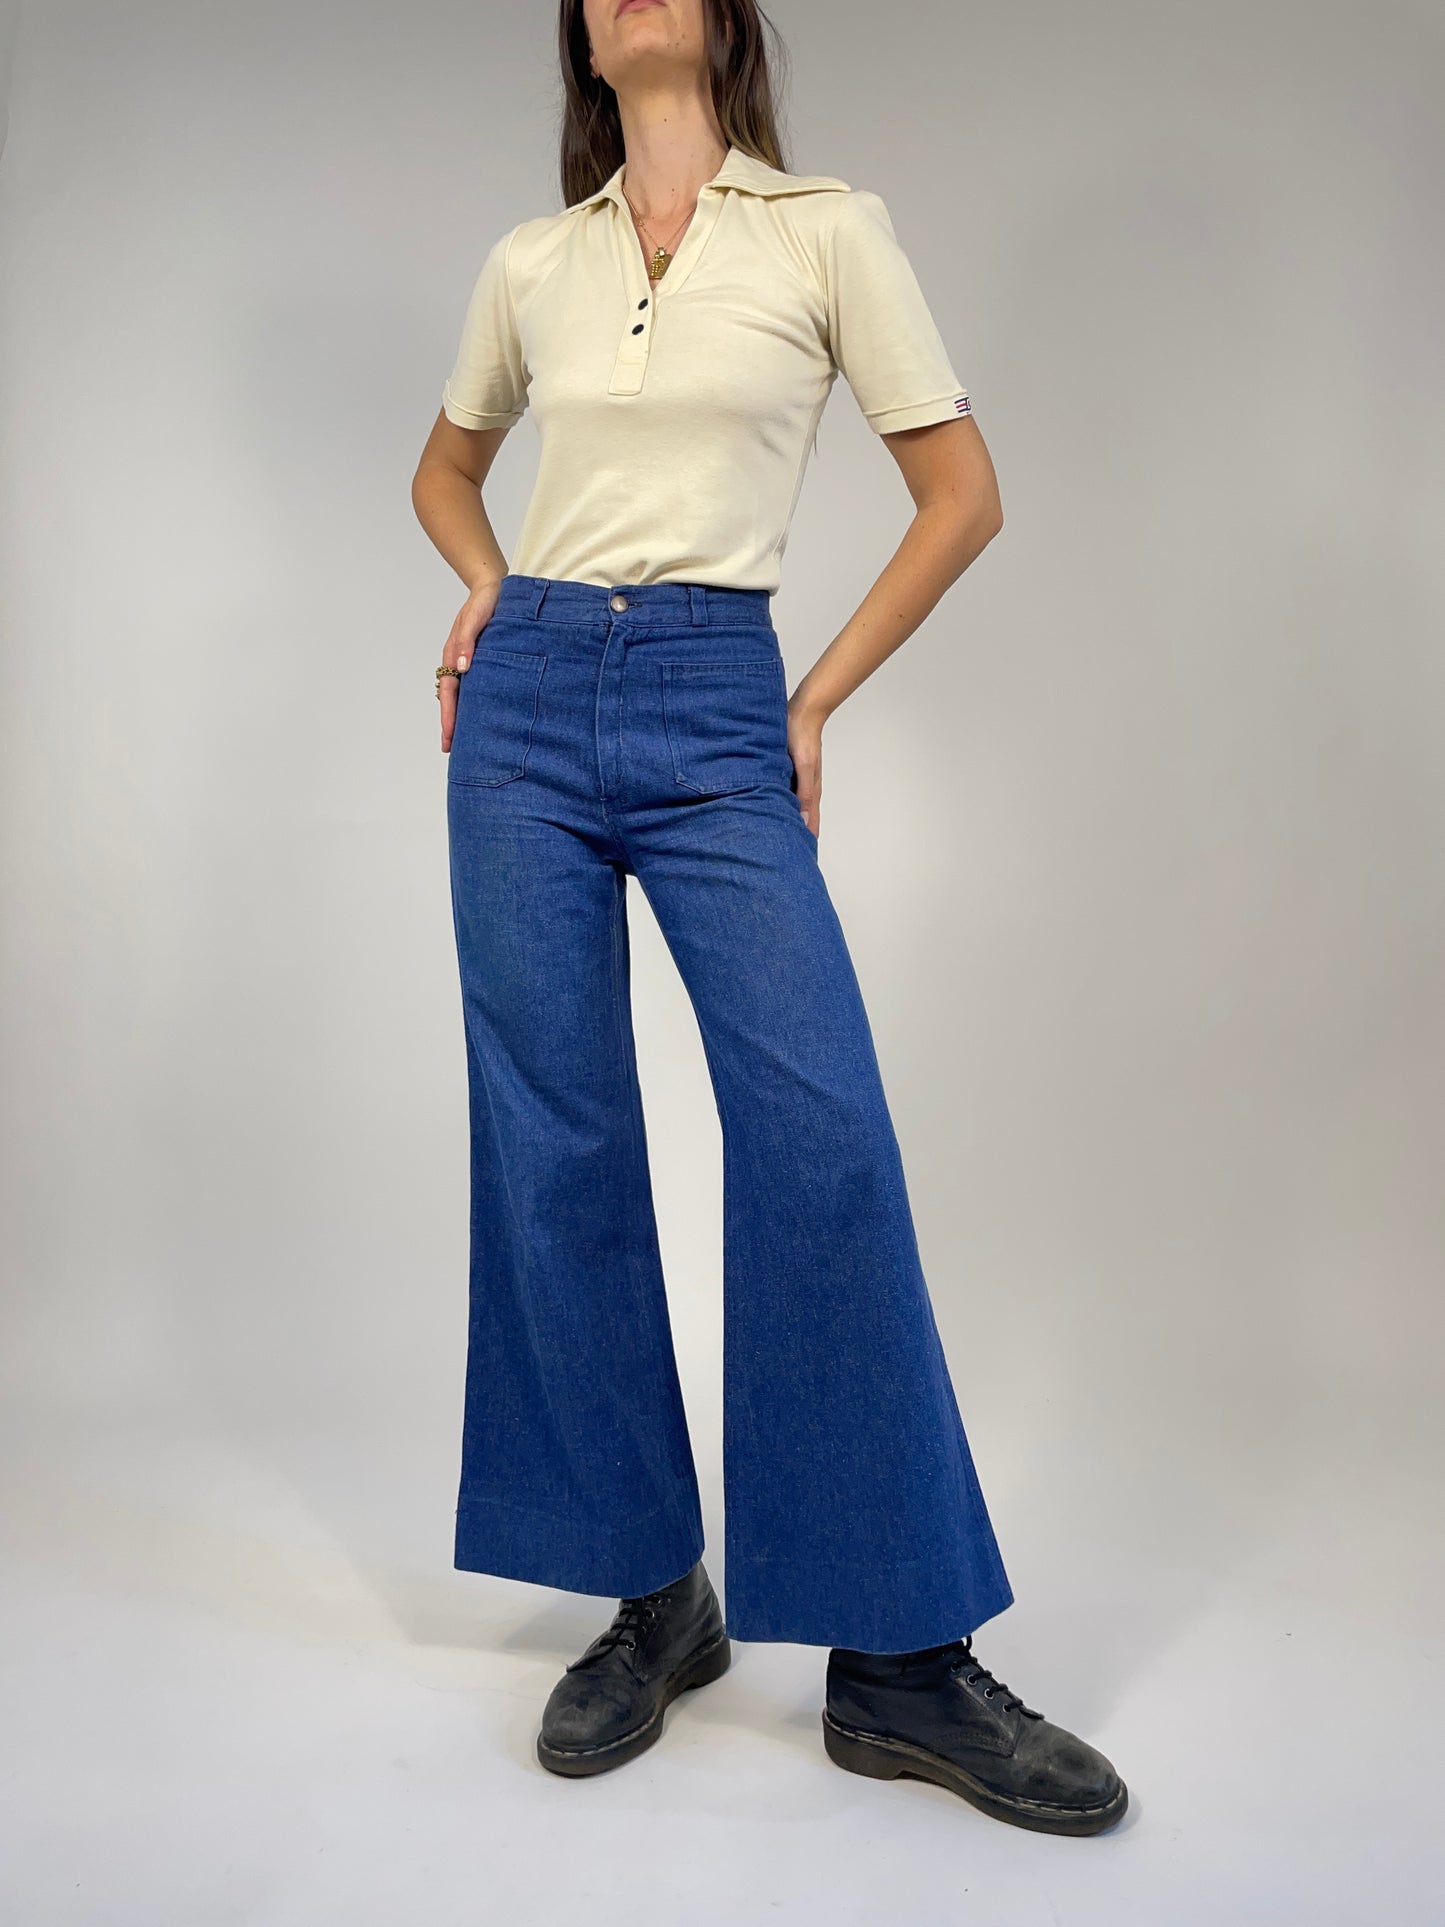 jeans-a-zampa-anni-70